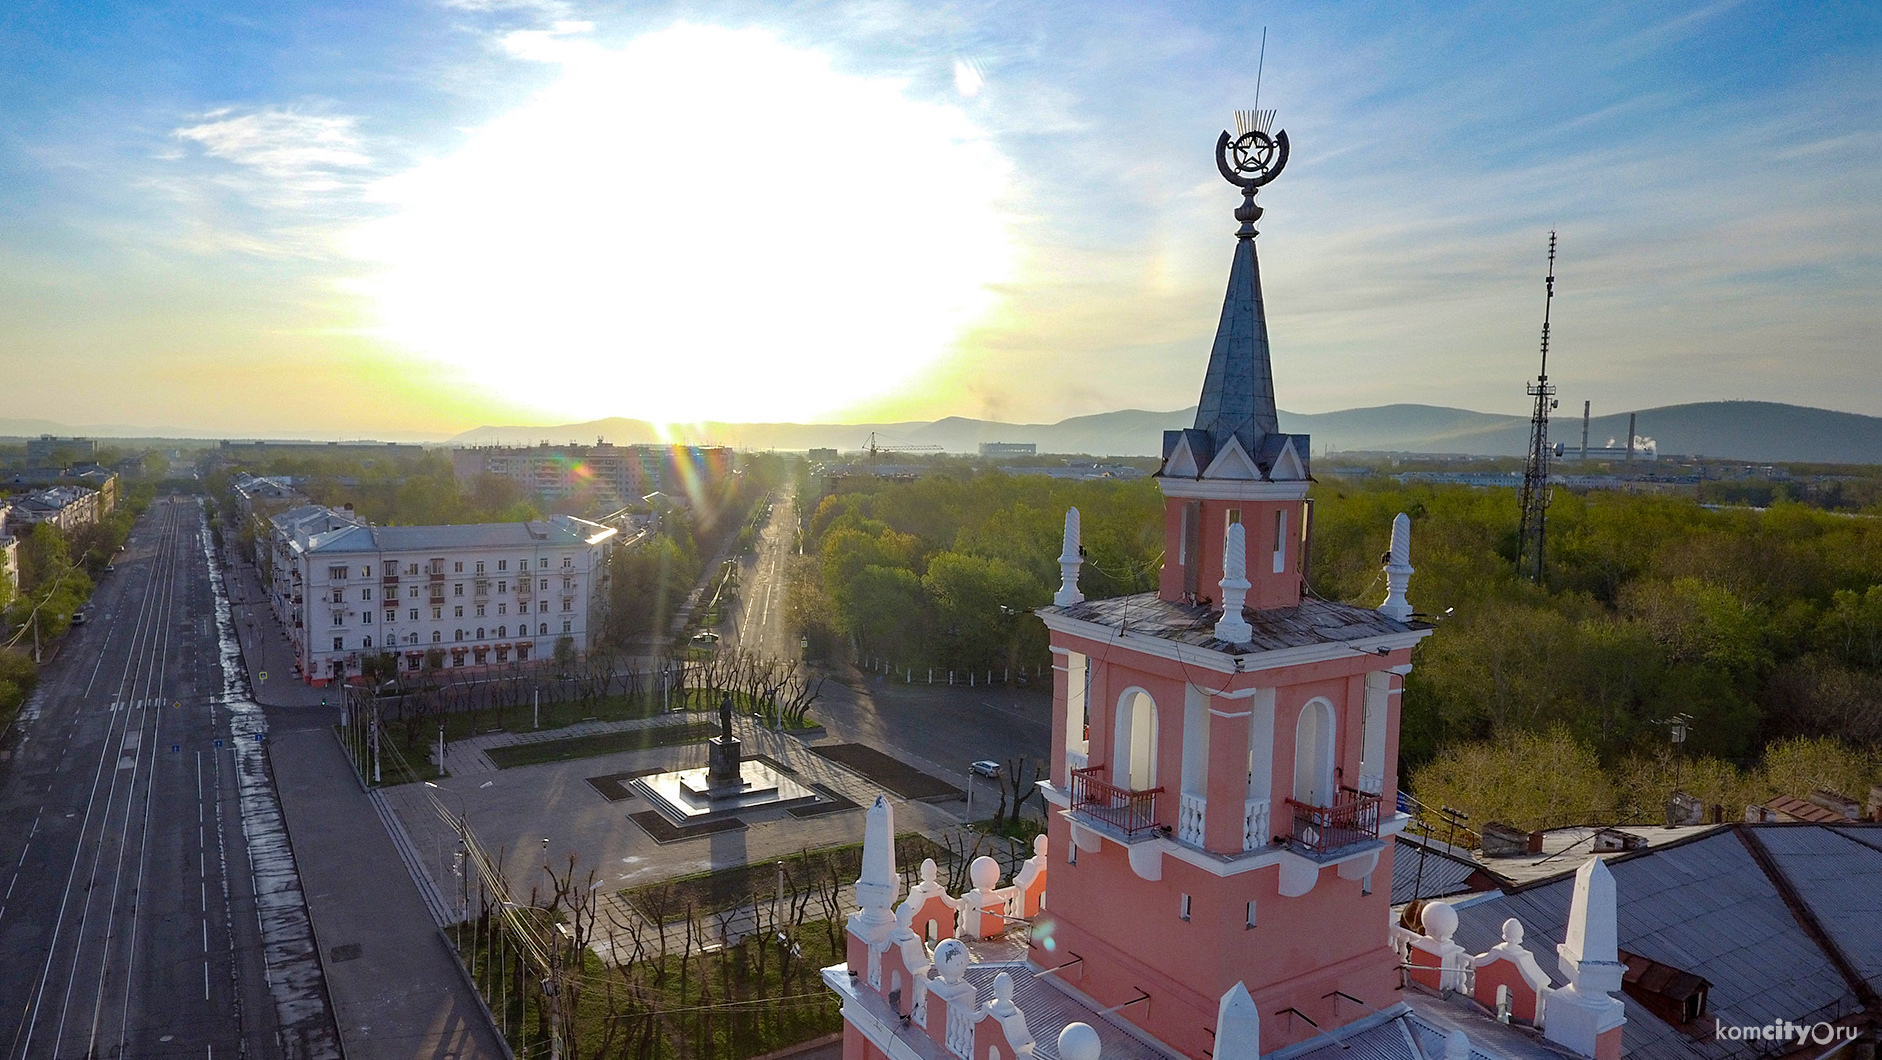 Площадь Комсомольска-на-Амуре сократилась почти на 3 миллиона квадратных метров